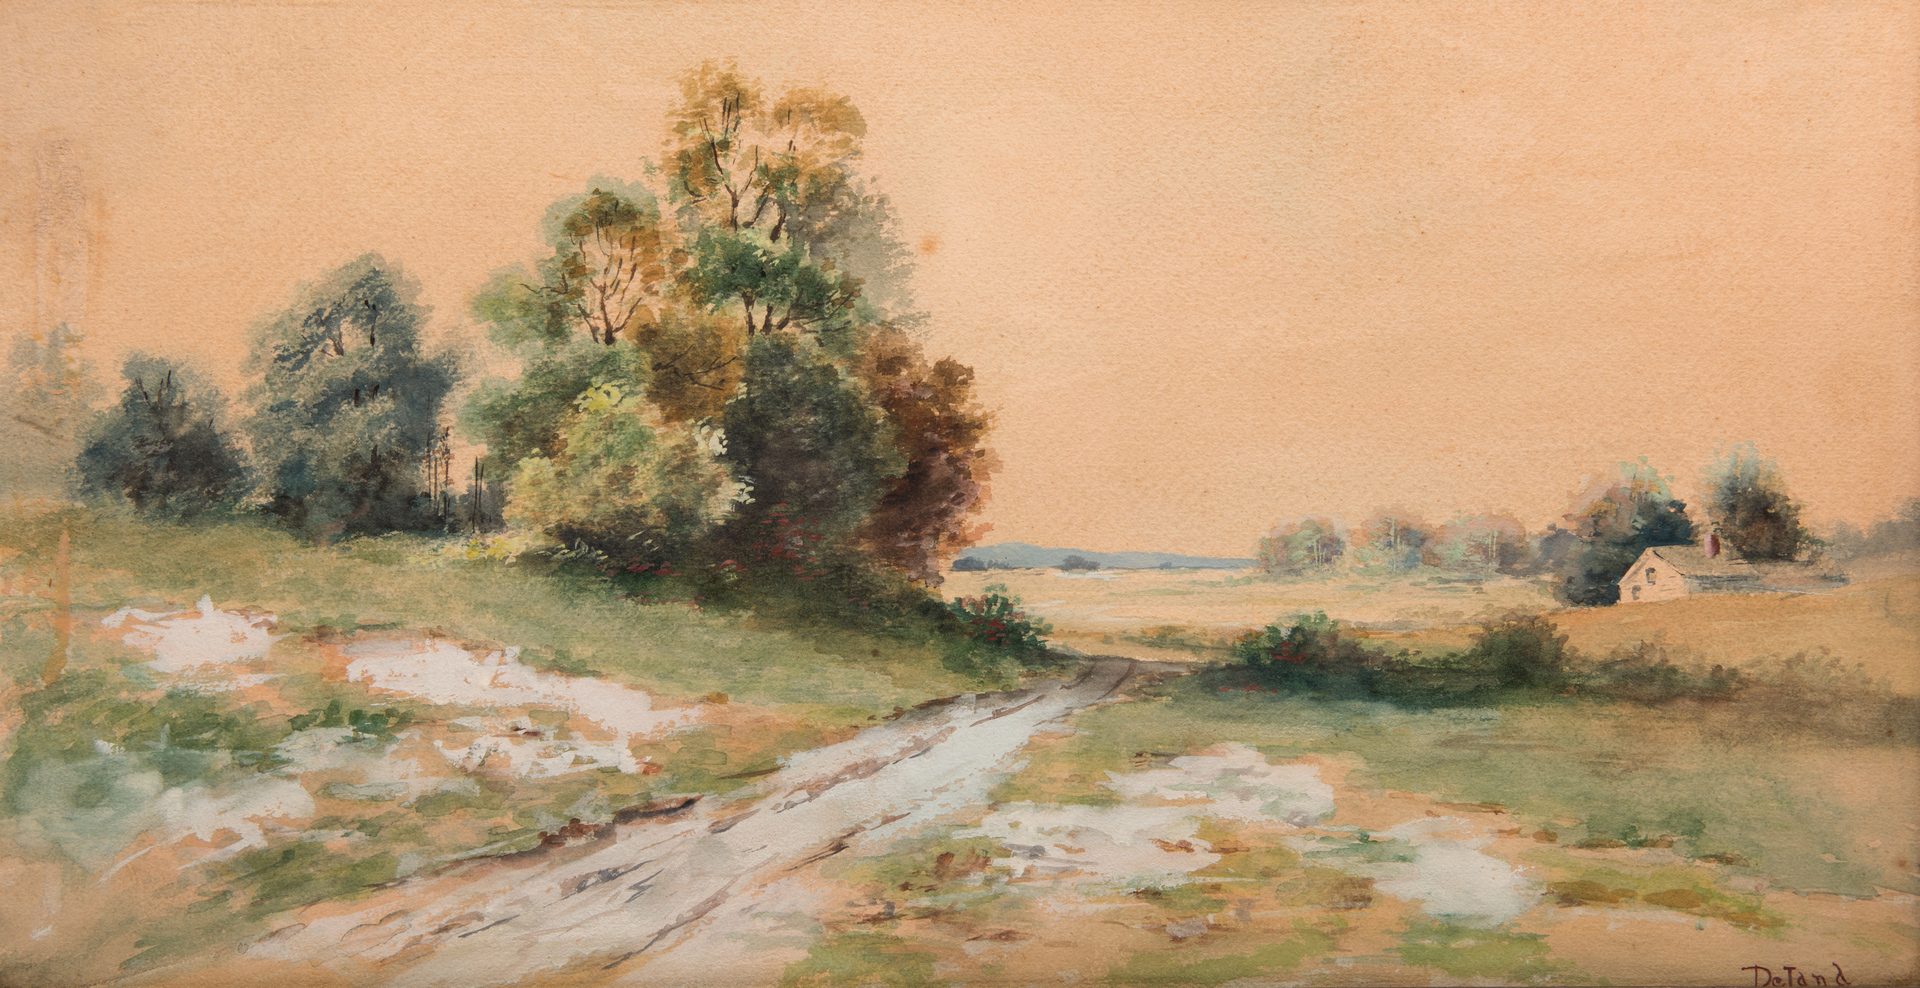 Lot 222: Deland Watercolor Landscape